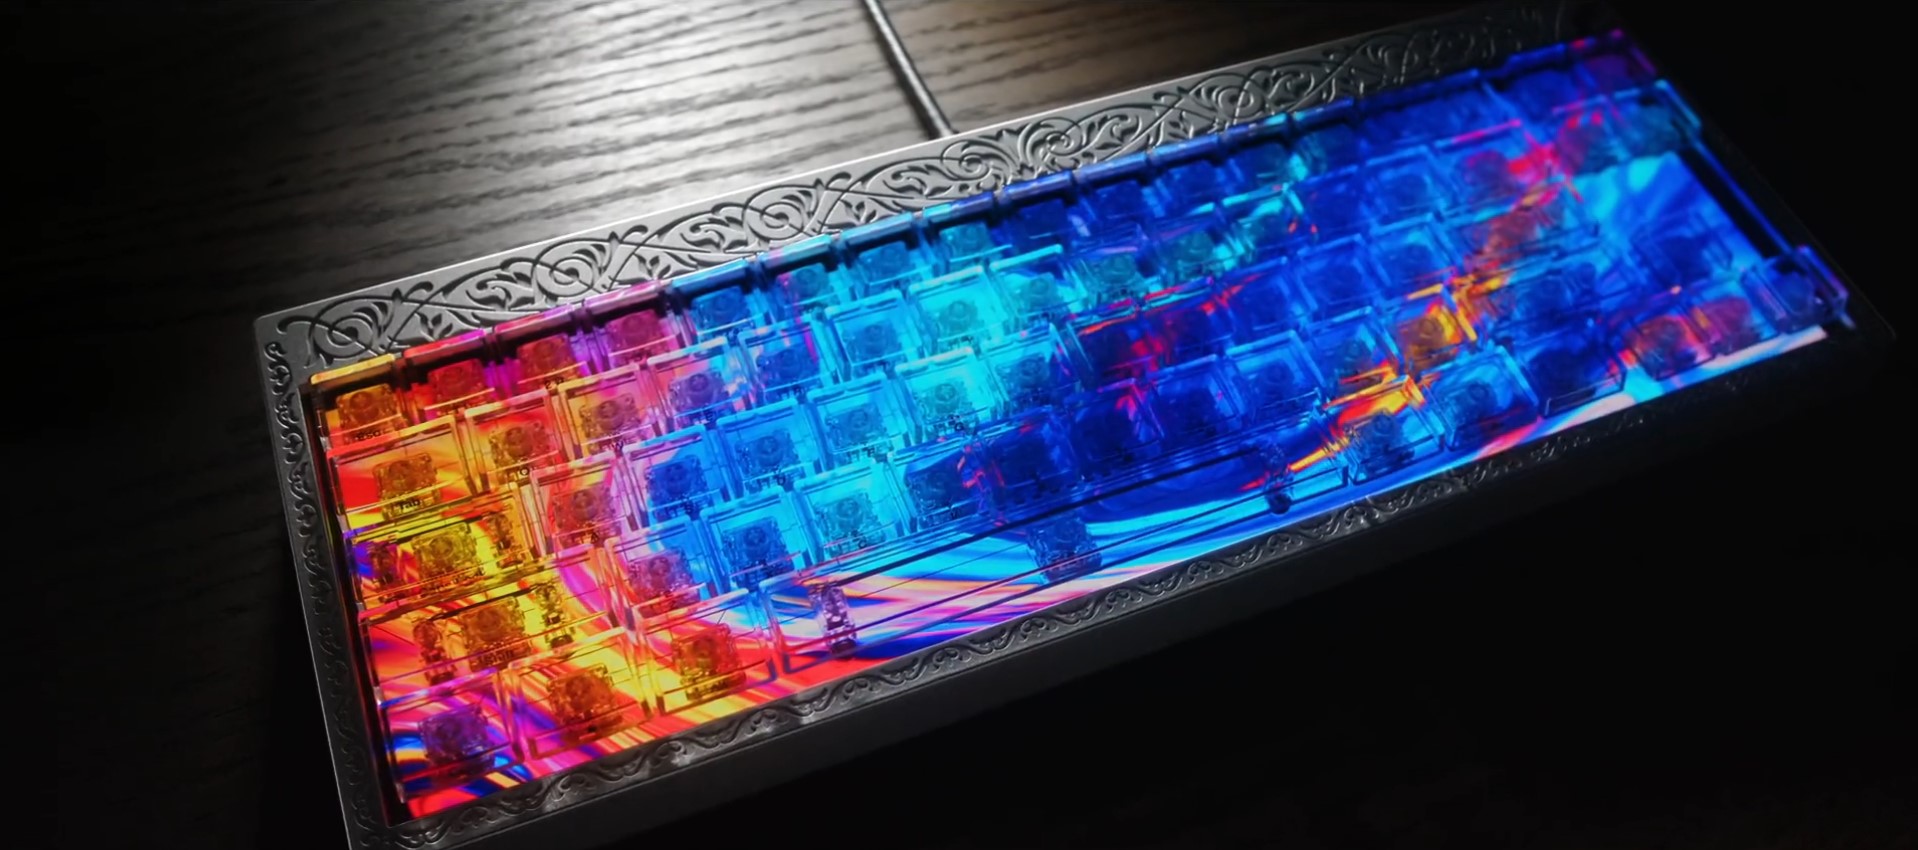 Finalmouse Centerpiece klawiatura z ekranem keyboard